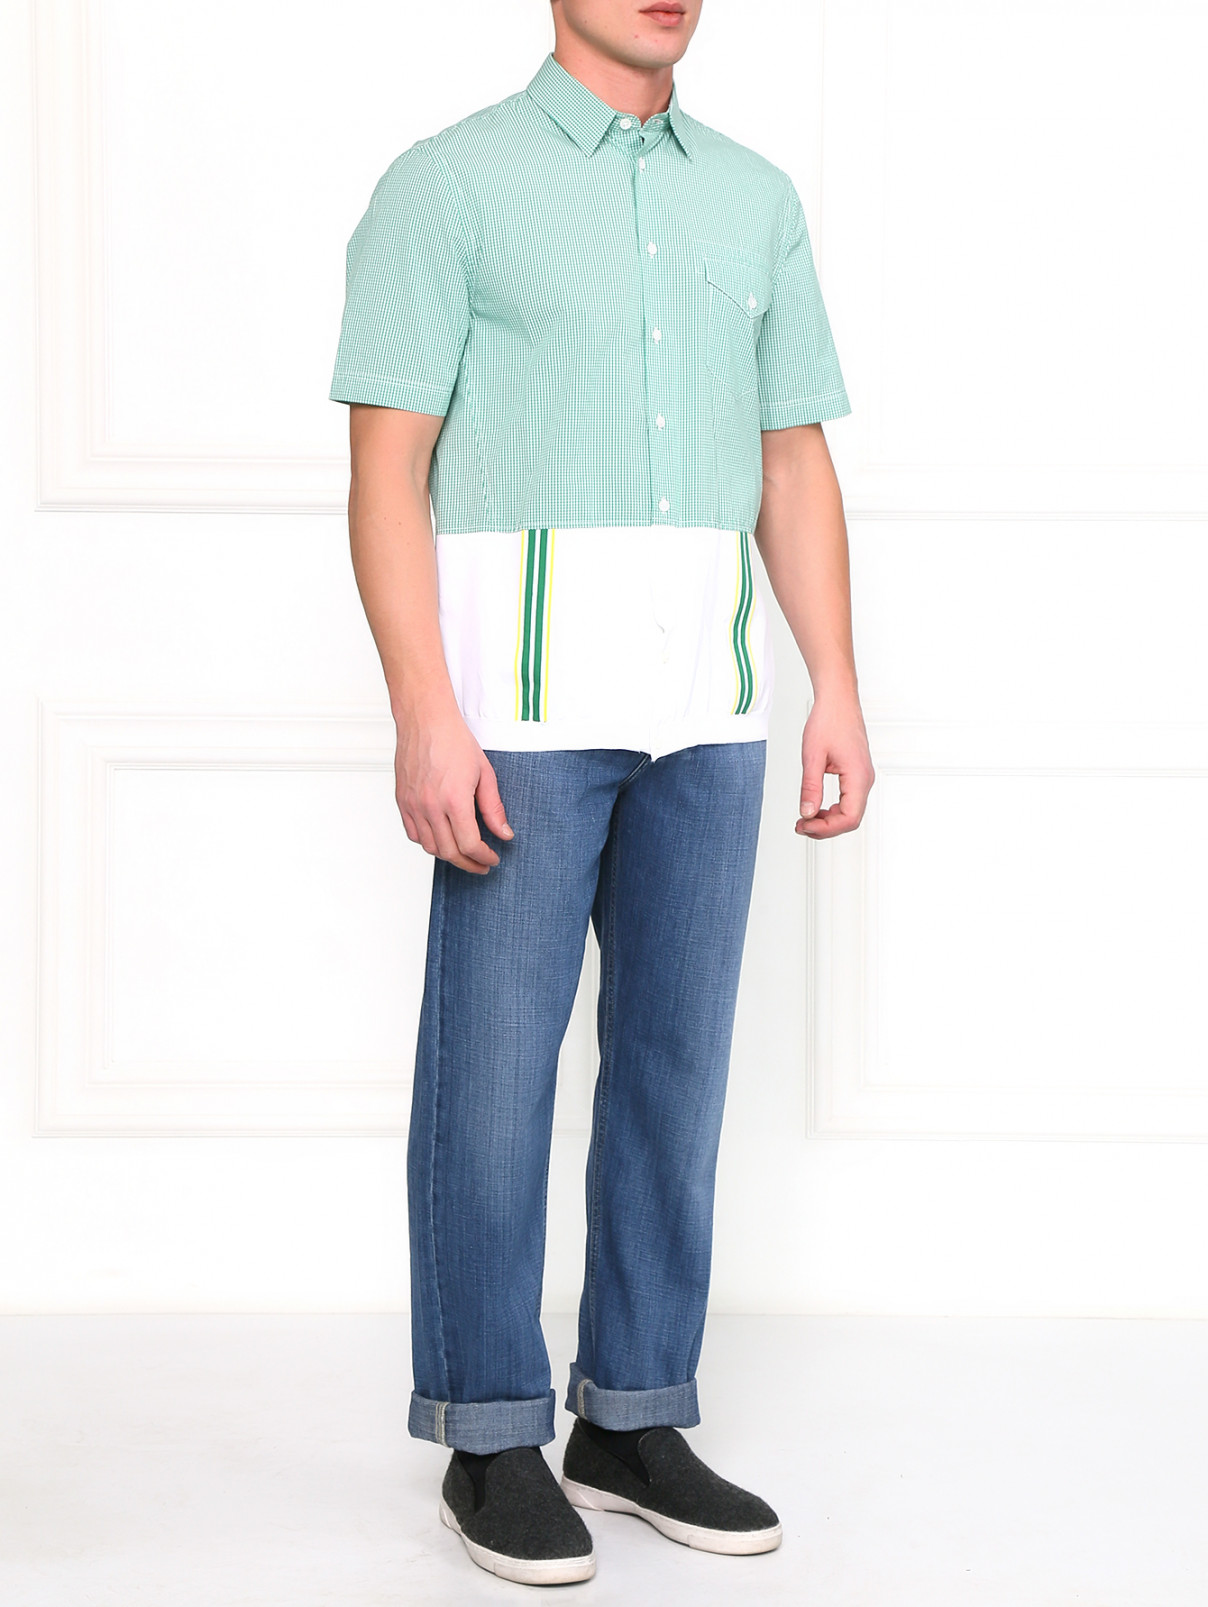 Рубашка из хлопка с контрастными вставками Antonio Marras  –  Модель Общий вид  – Цвет:  Узор